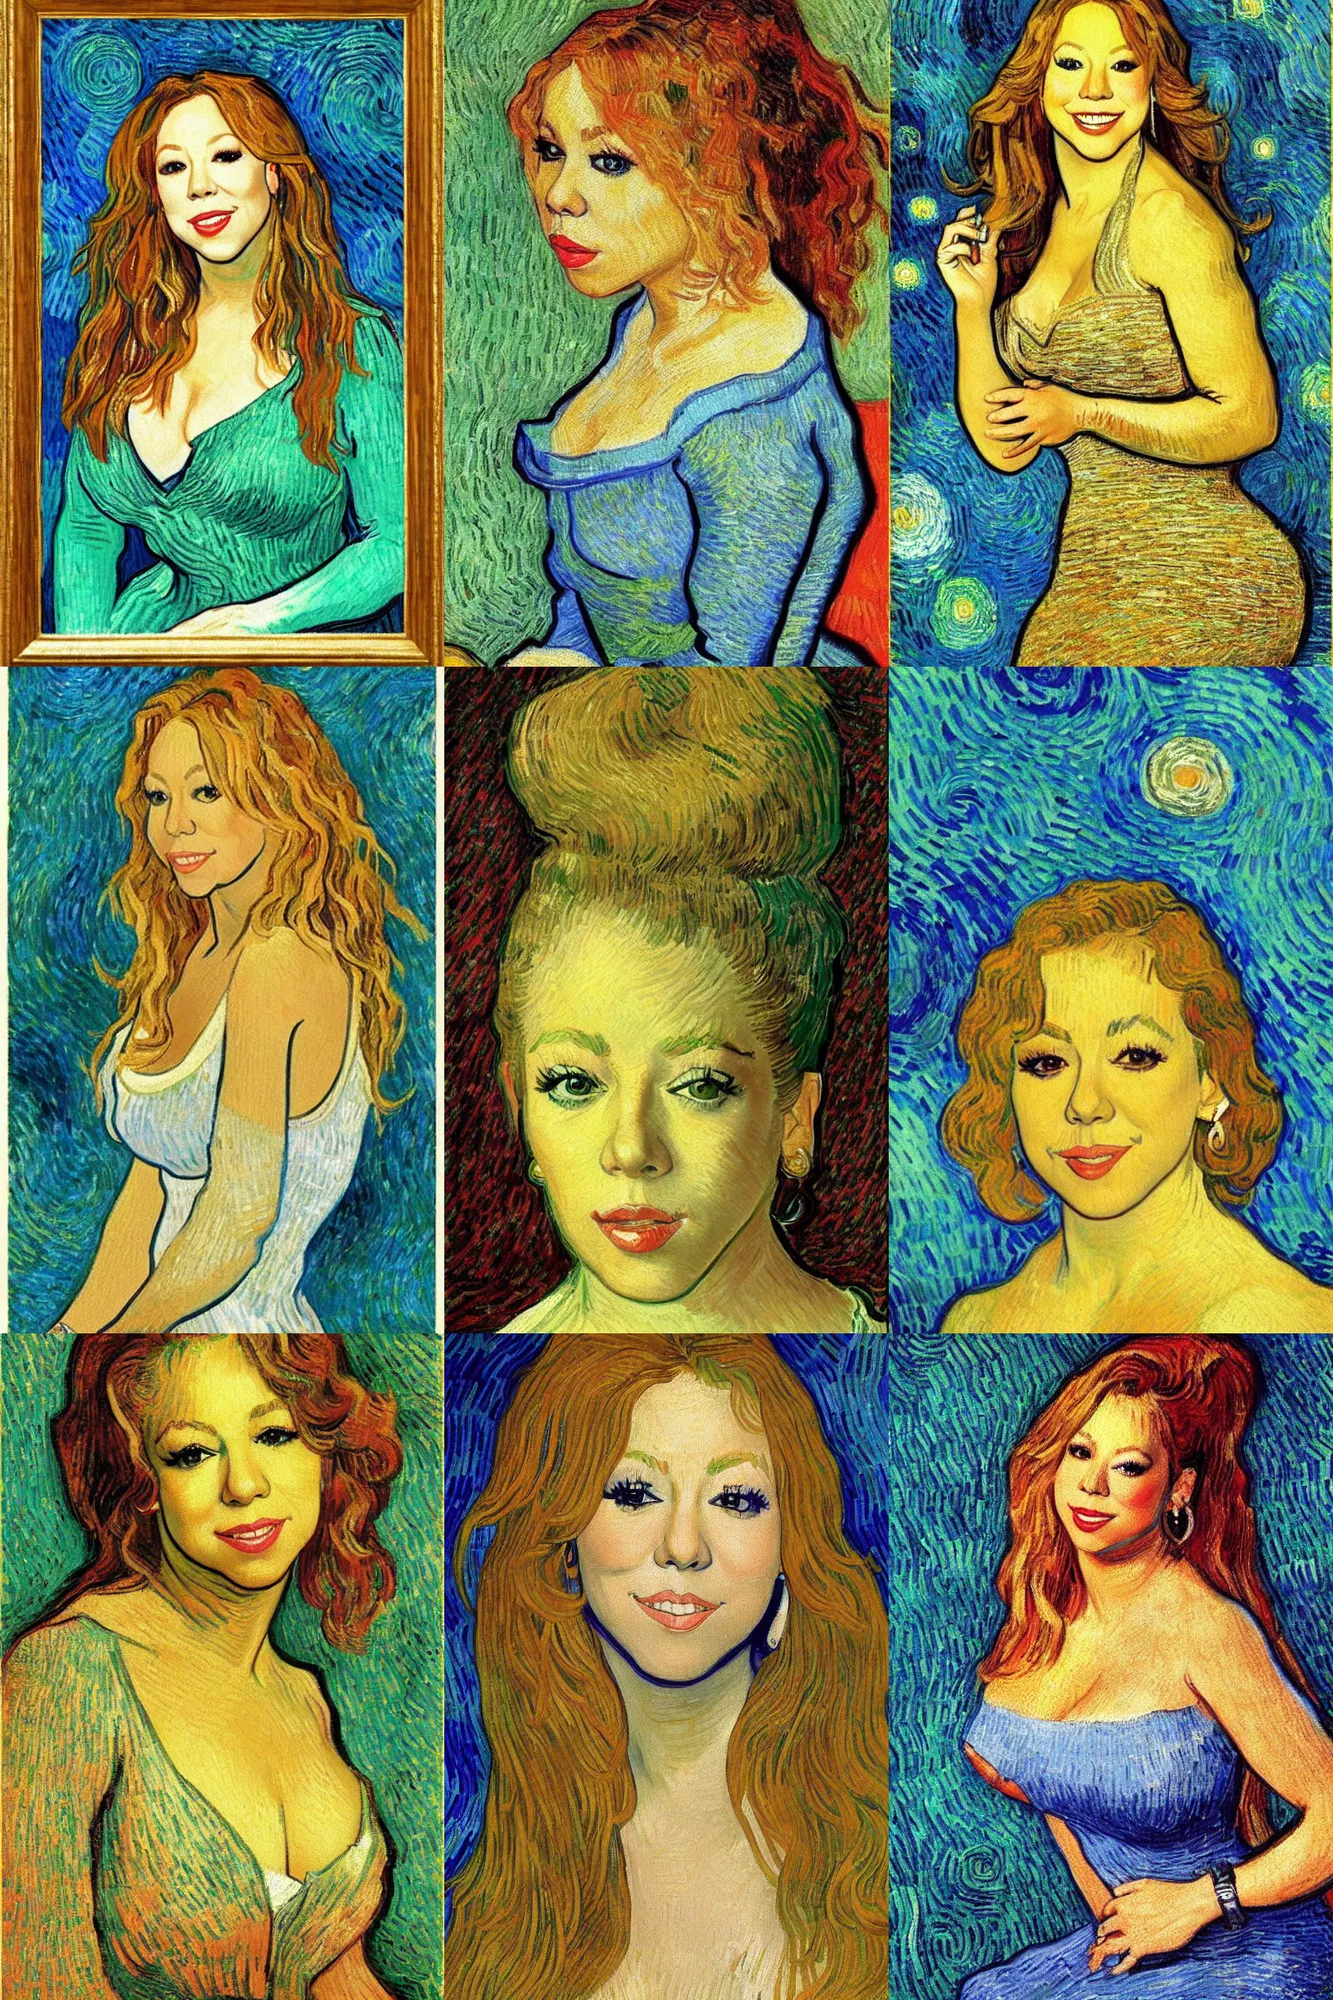 Prompt: Portrait of Mariah Carey 1995 by Van gogh